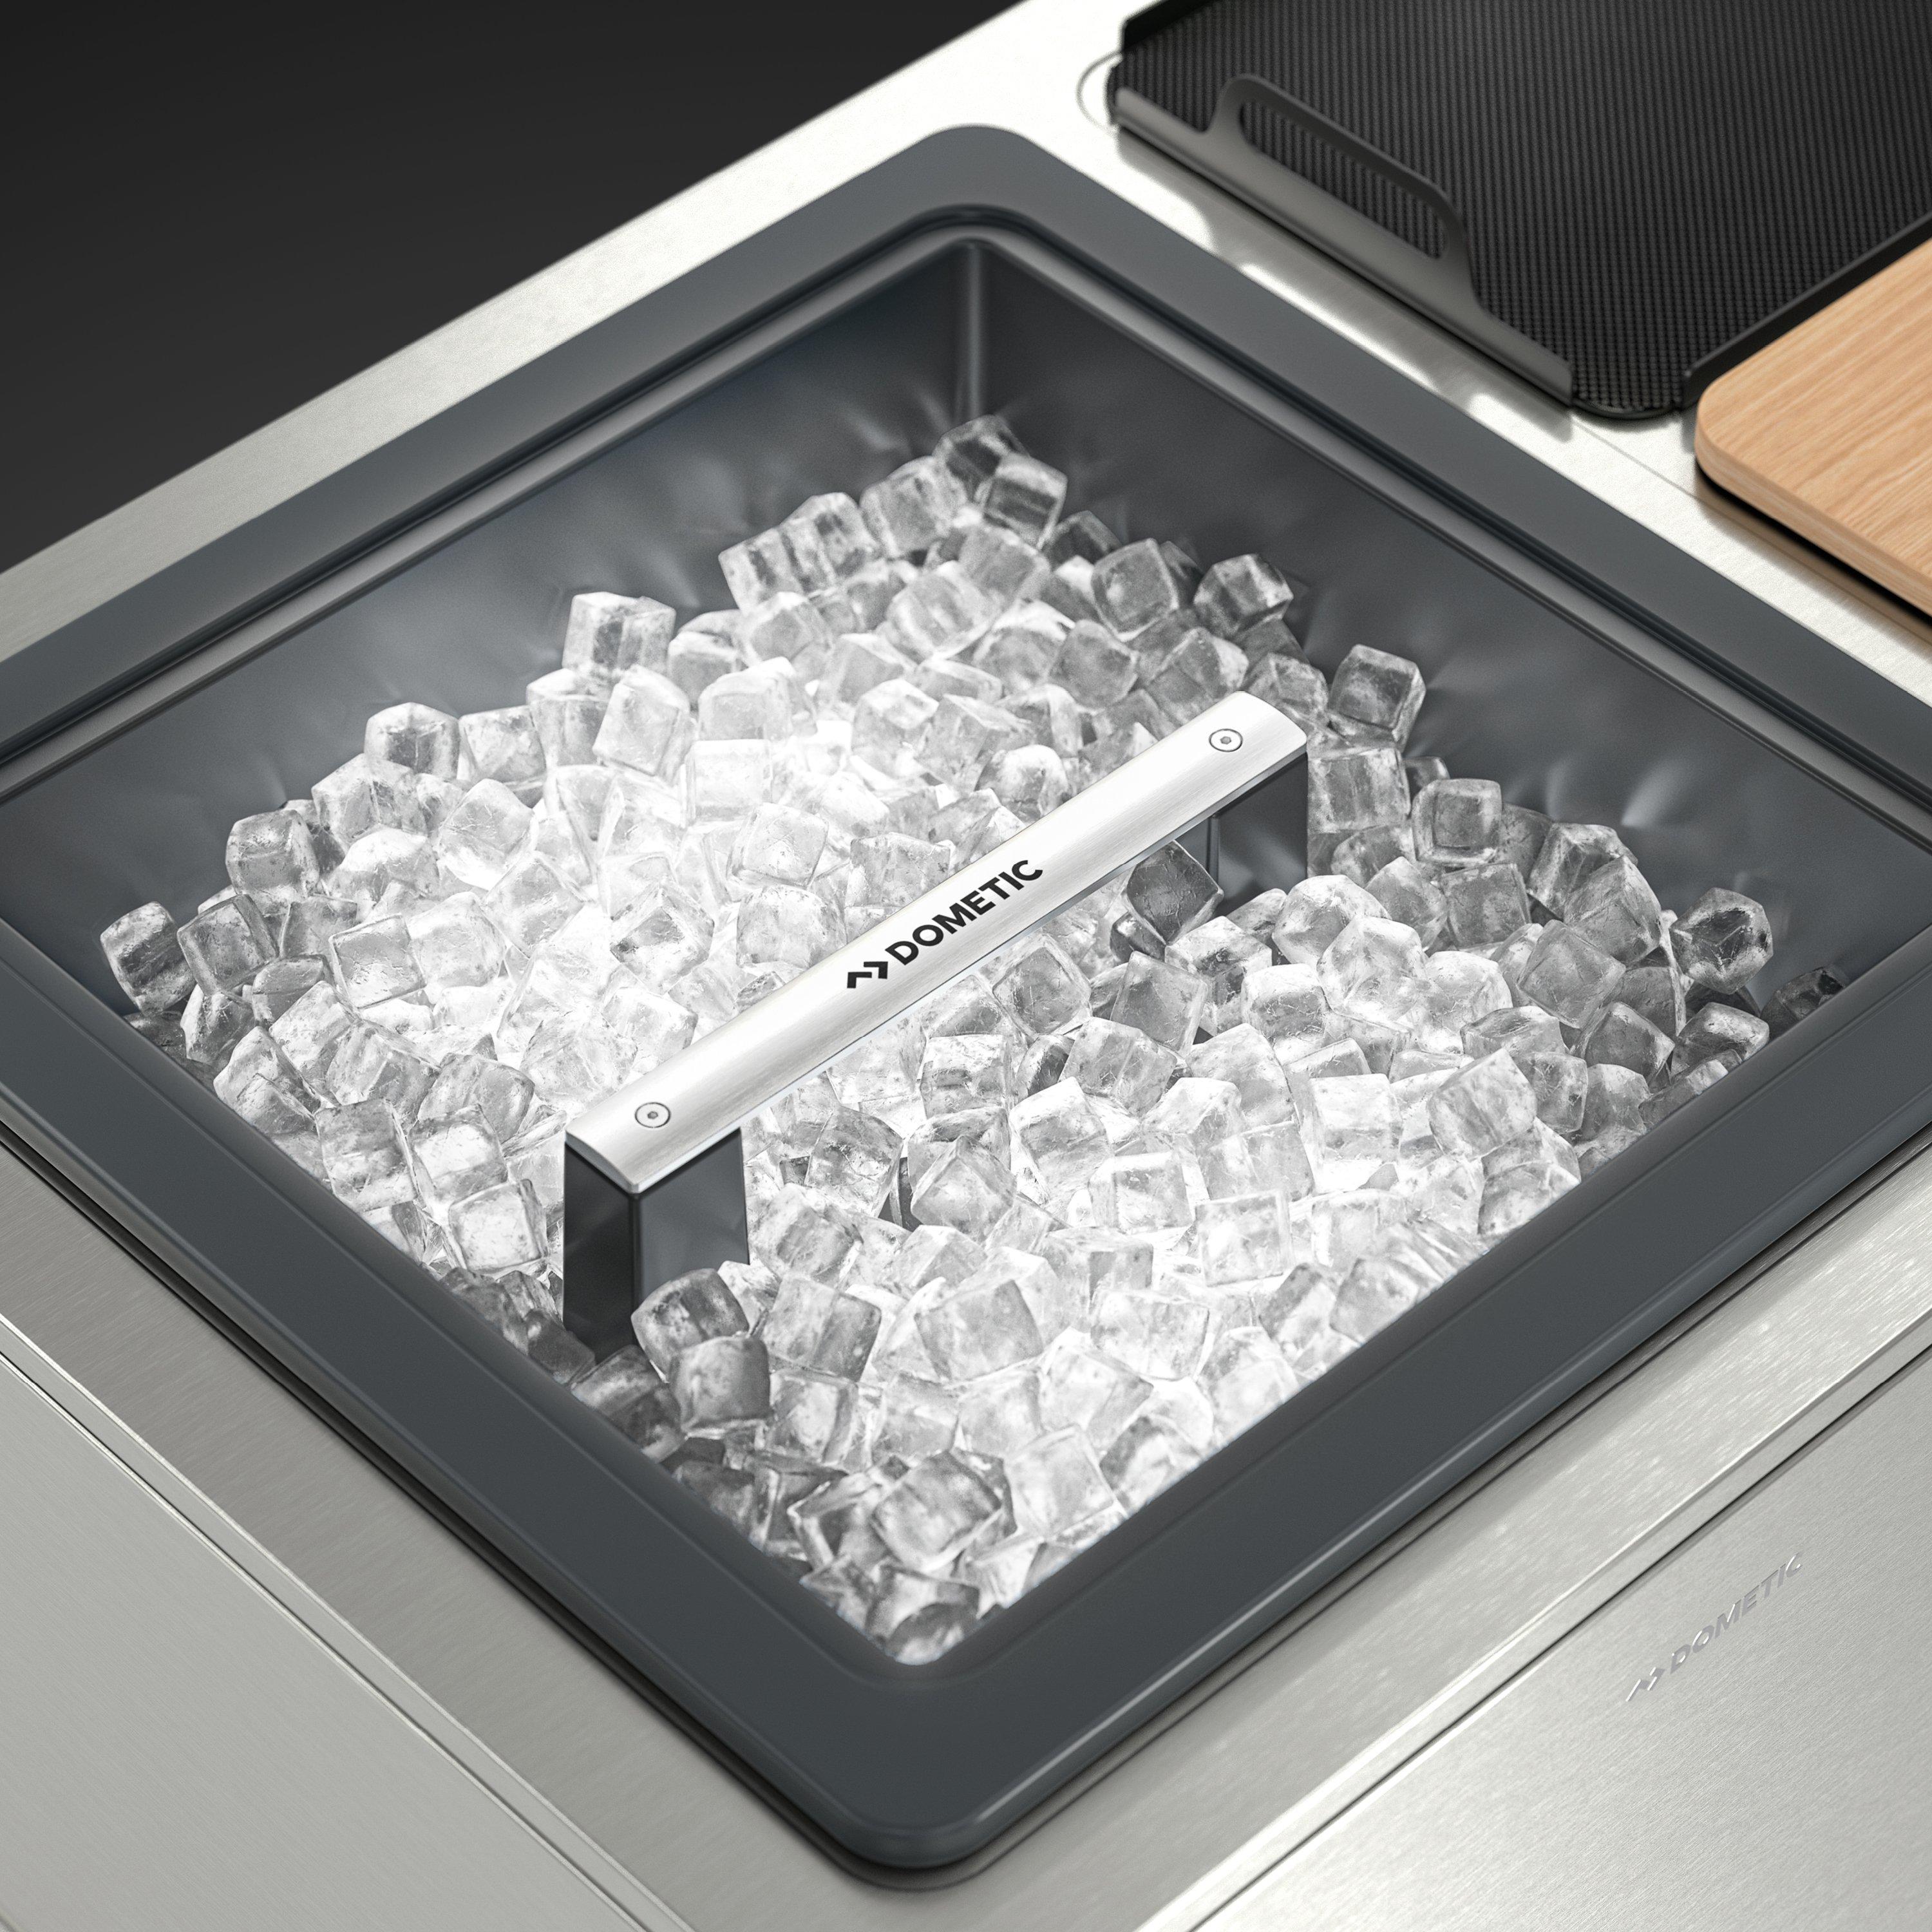 Portable Bar Ice Bin - Portable Bars